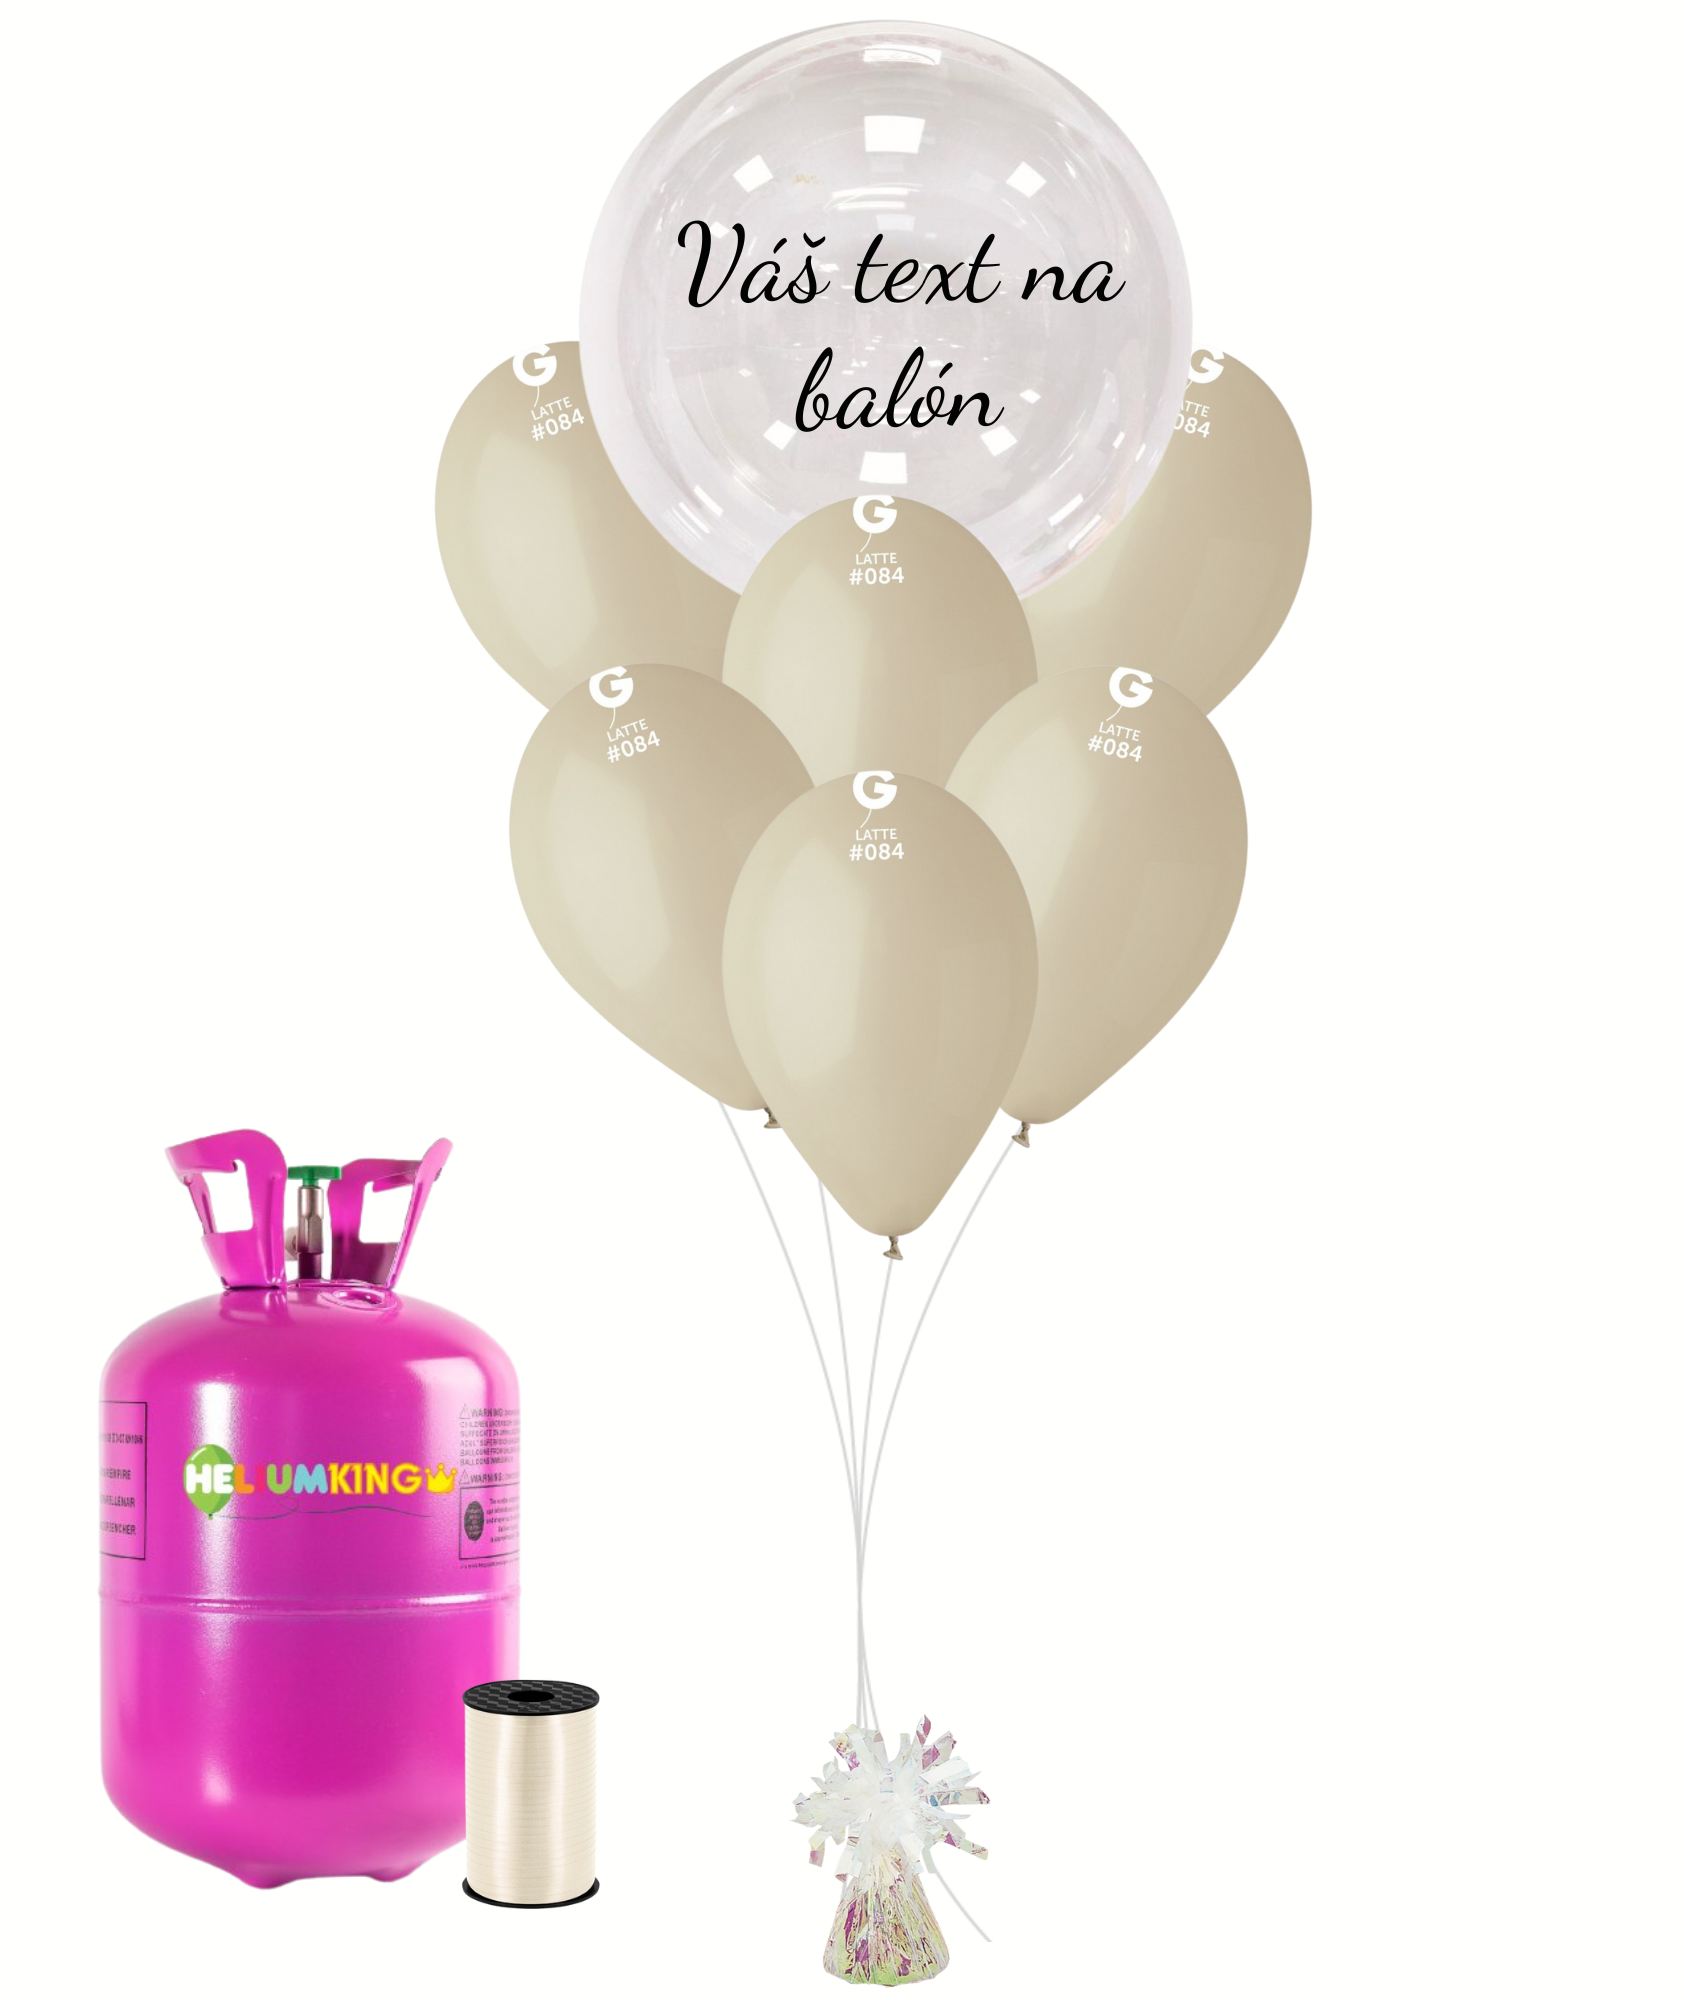 Personal Personalizovaný helium párty set latte - Průsvitný balón 16 ks